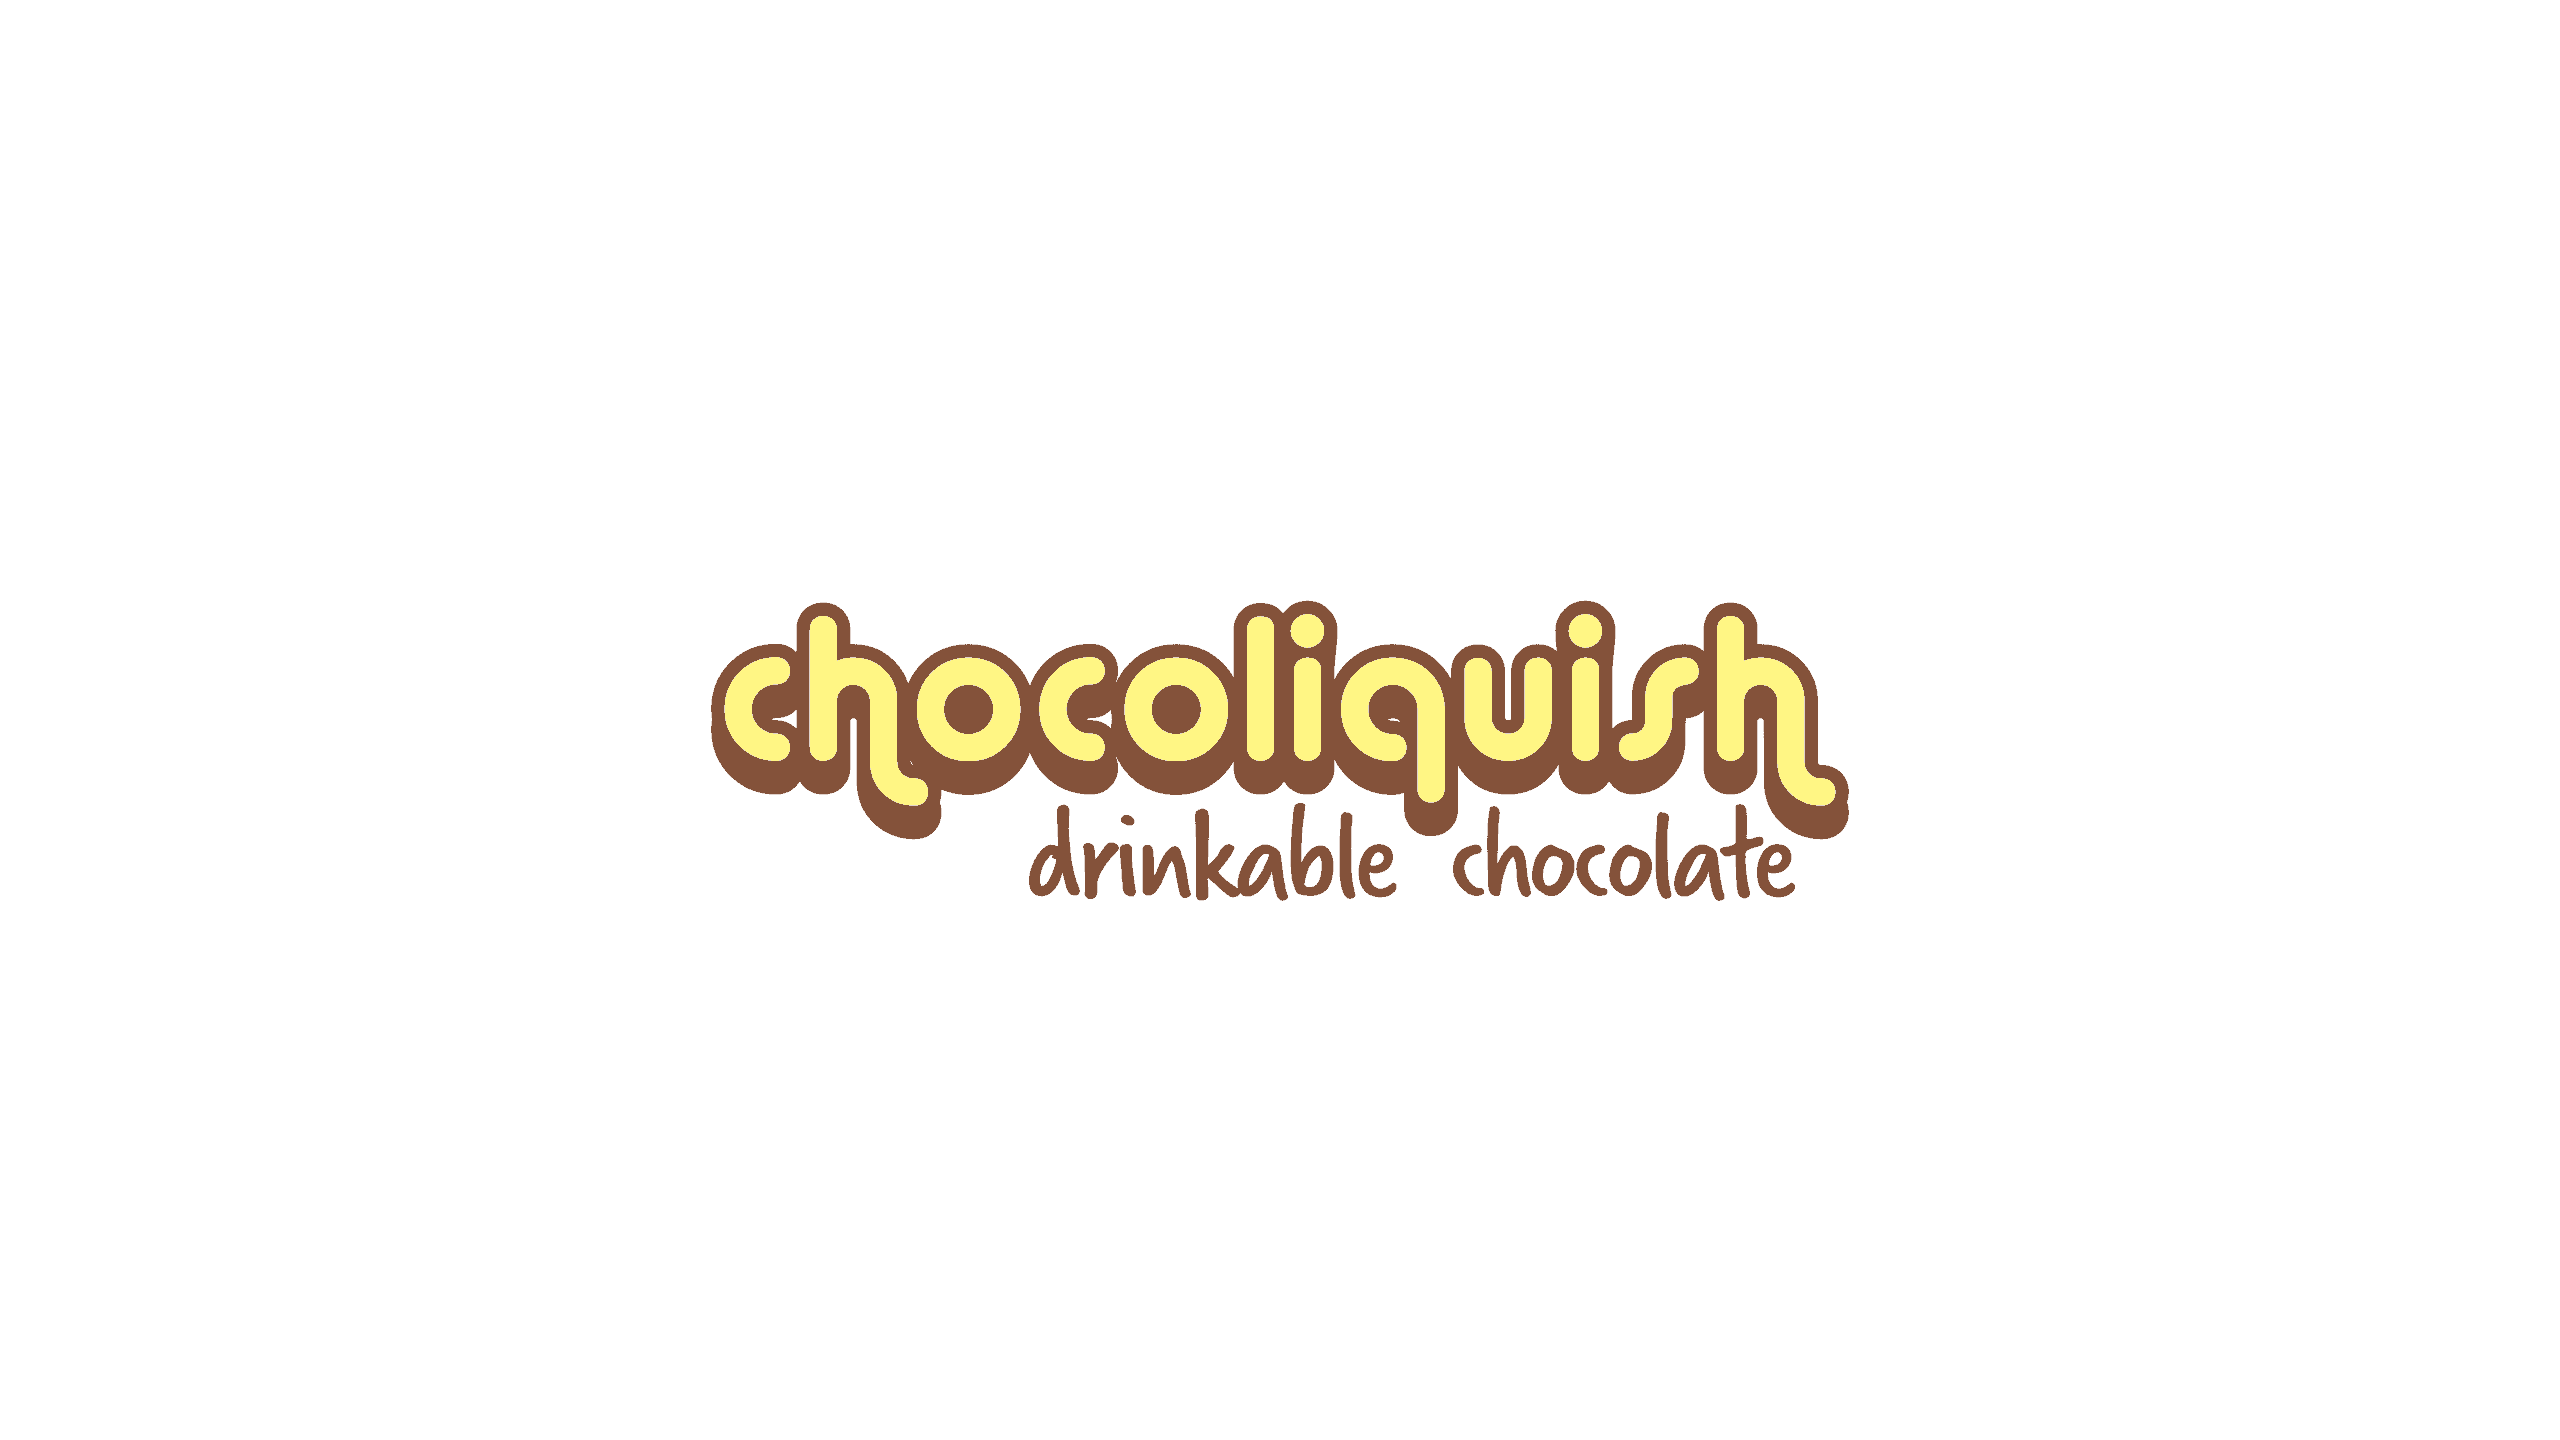 Chocoliquish